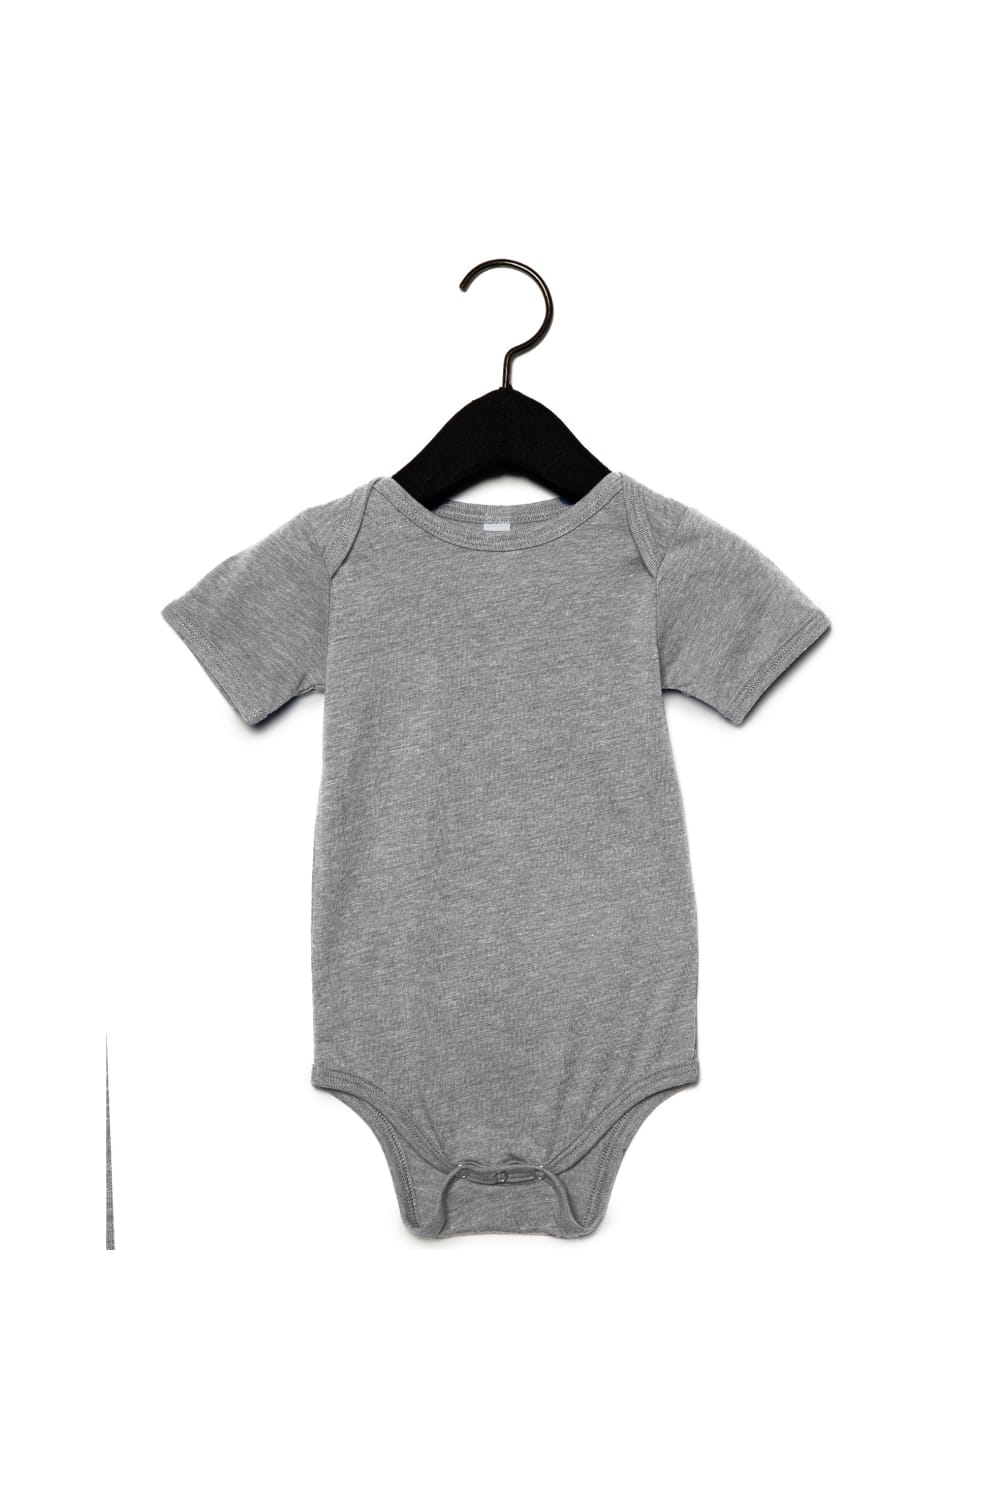 Unisex Baby Triblend Short Sleeve Onesie -Gray Triblend